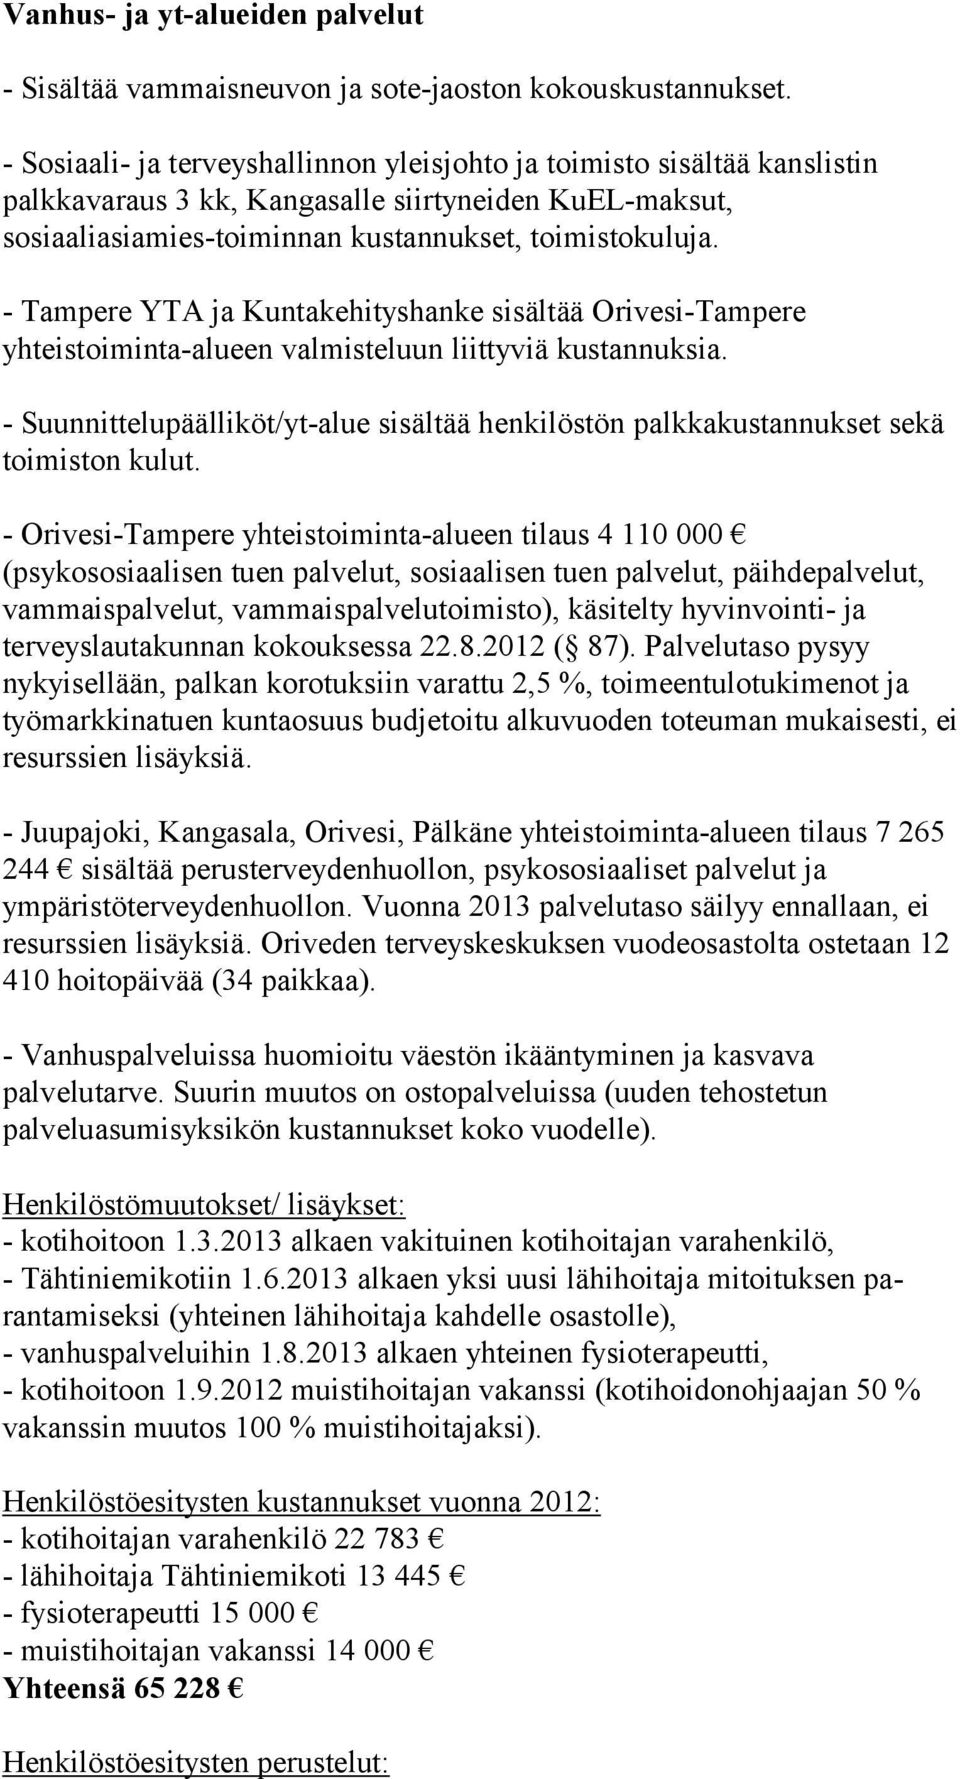 - Tampere YTA ja Kuntakehityshanke sisältää Orivesi-Tampere yhteistoiminta-alueen valmisteluun liittyviä kustannuksia.